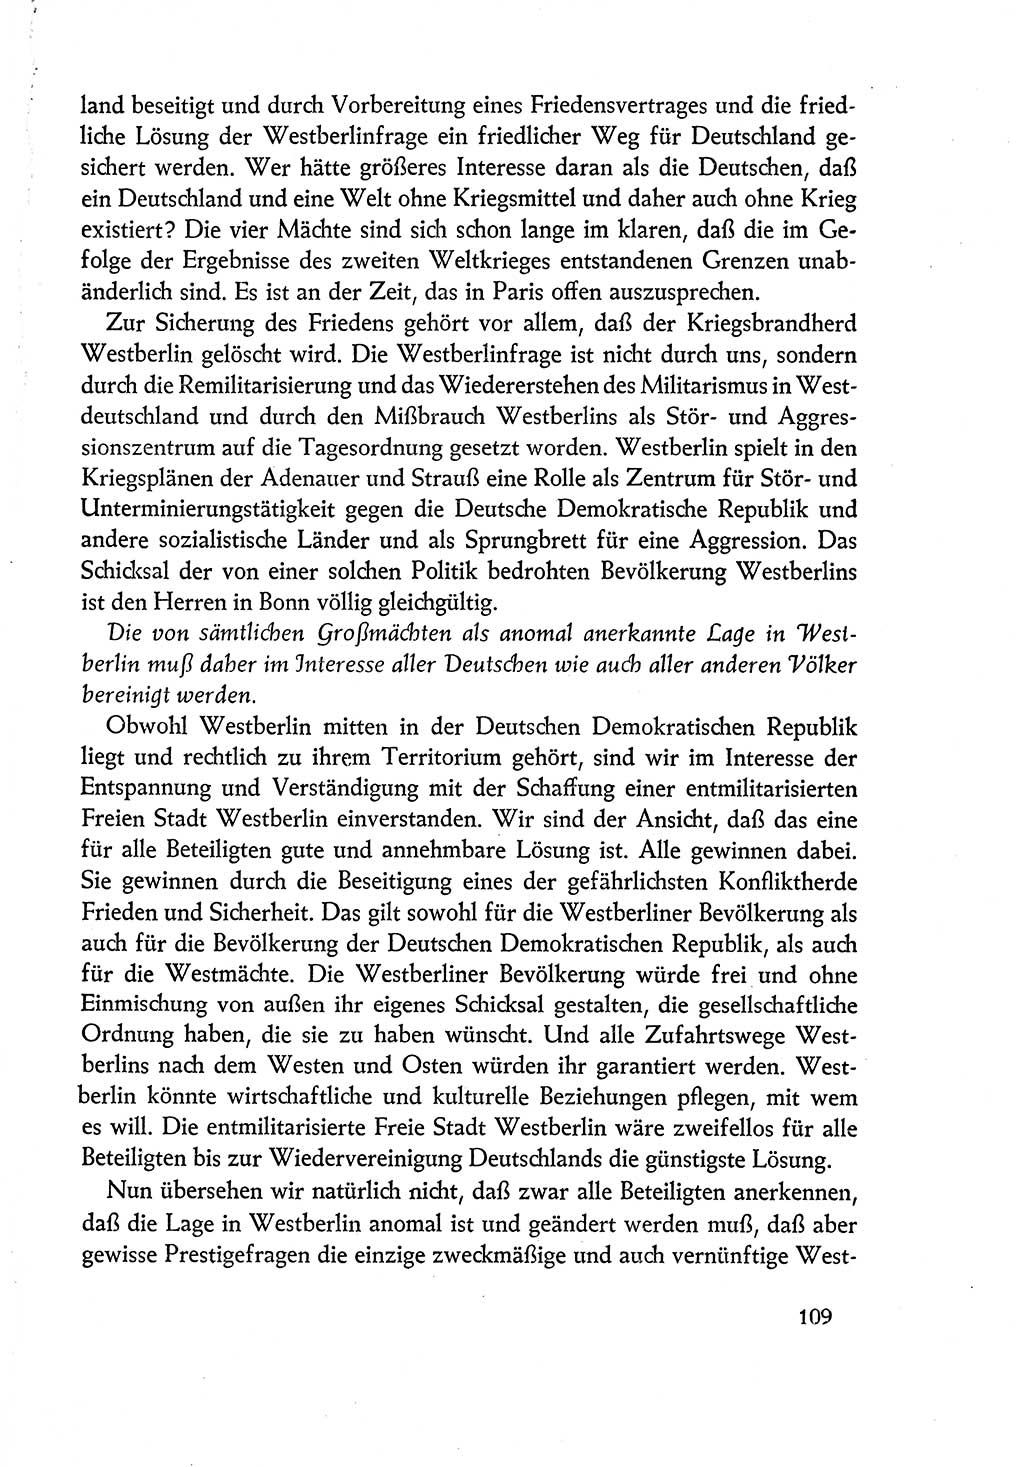 Dokumente der Sozialistischen Einheitspartei Deutschlands (SED) [Deutsche Demokratische Republik (DDR)] 1960-1961, Seite 109 (Dok. SED DDR 1960-1961, S. 109)